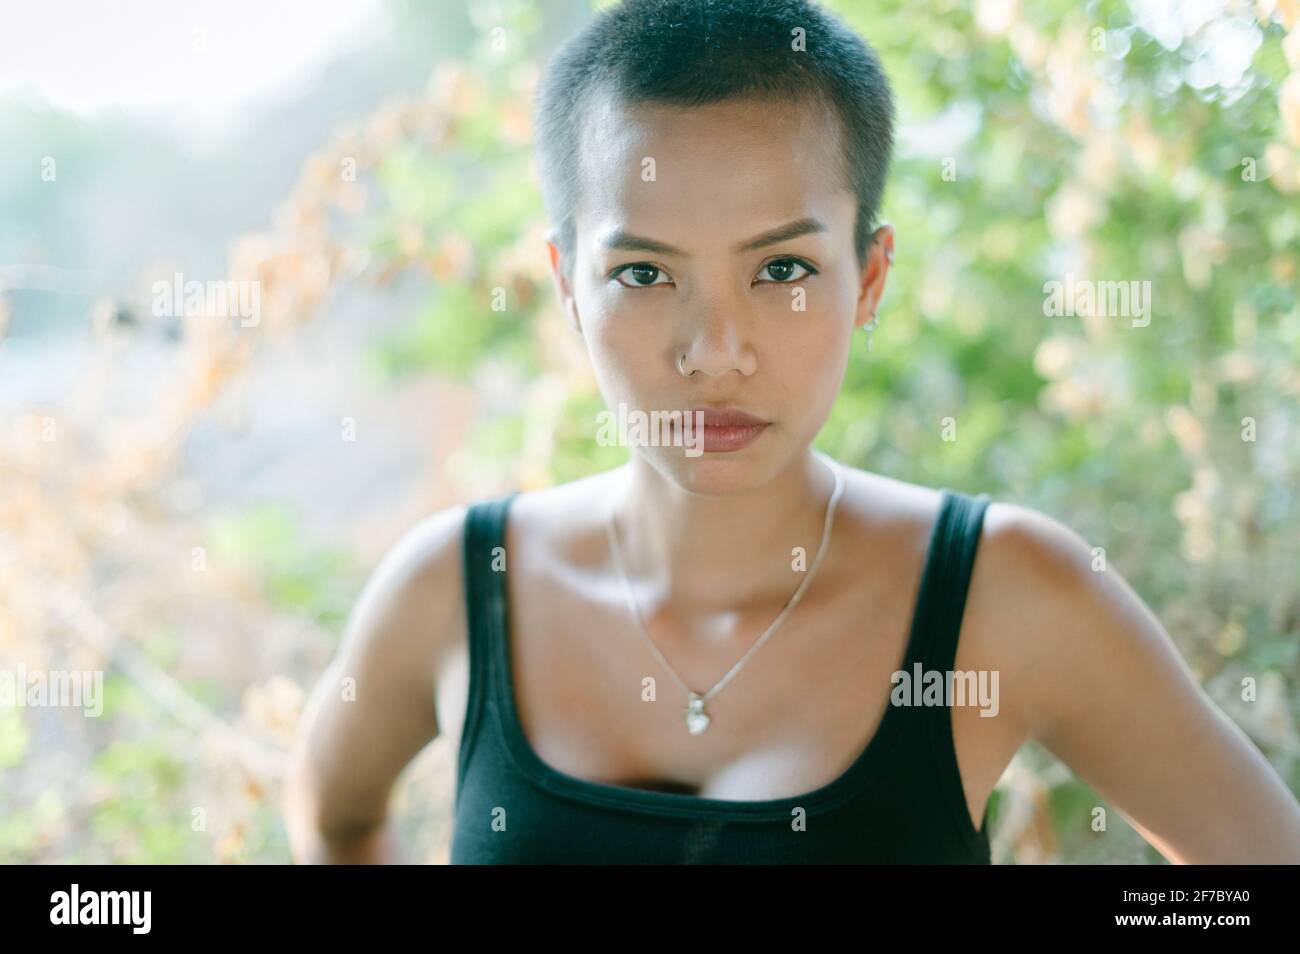 La cabeza de una joven mujer étnica asiática con pelo corto, usando un sujetador deportivo, mirando la cámara. Foto de stock